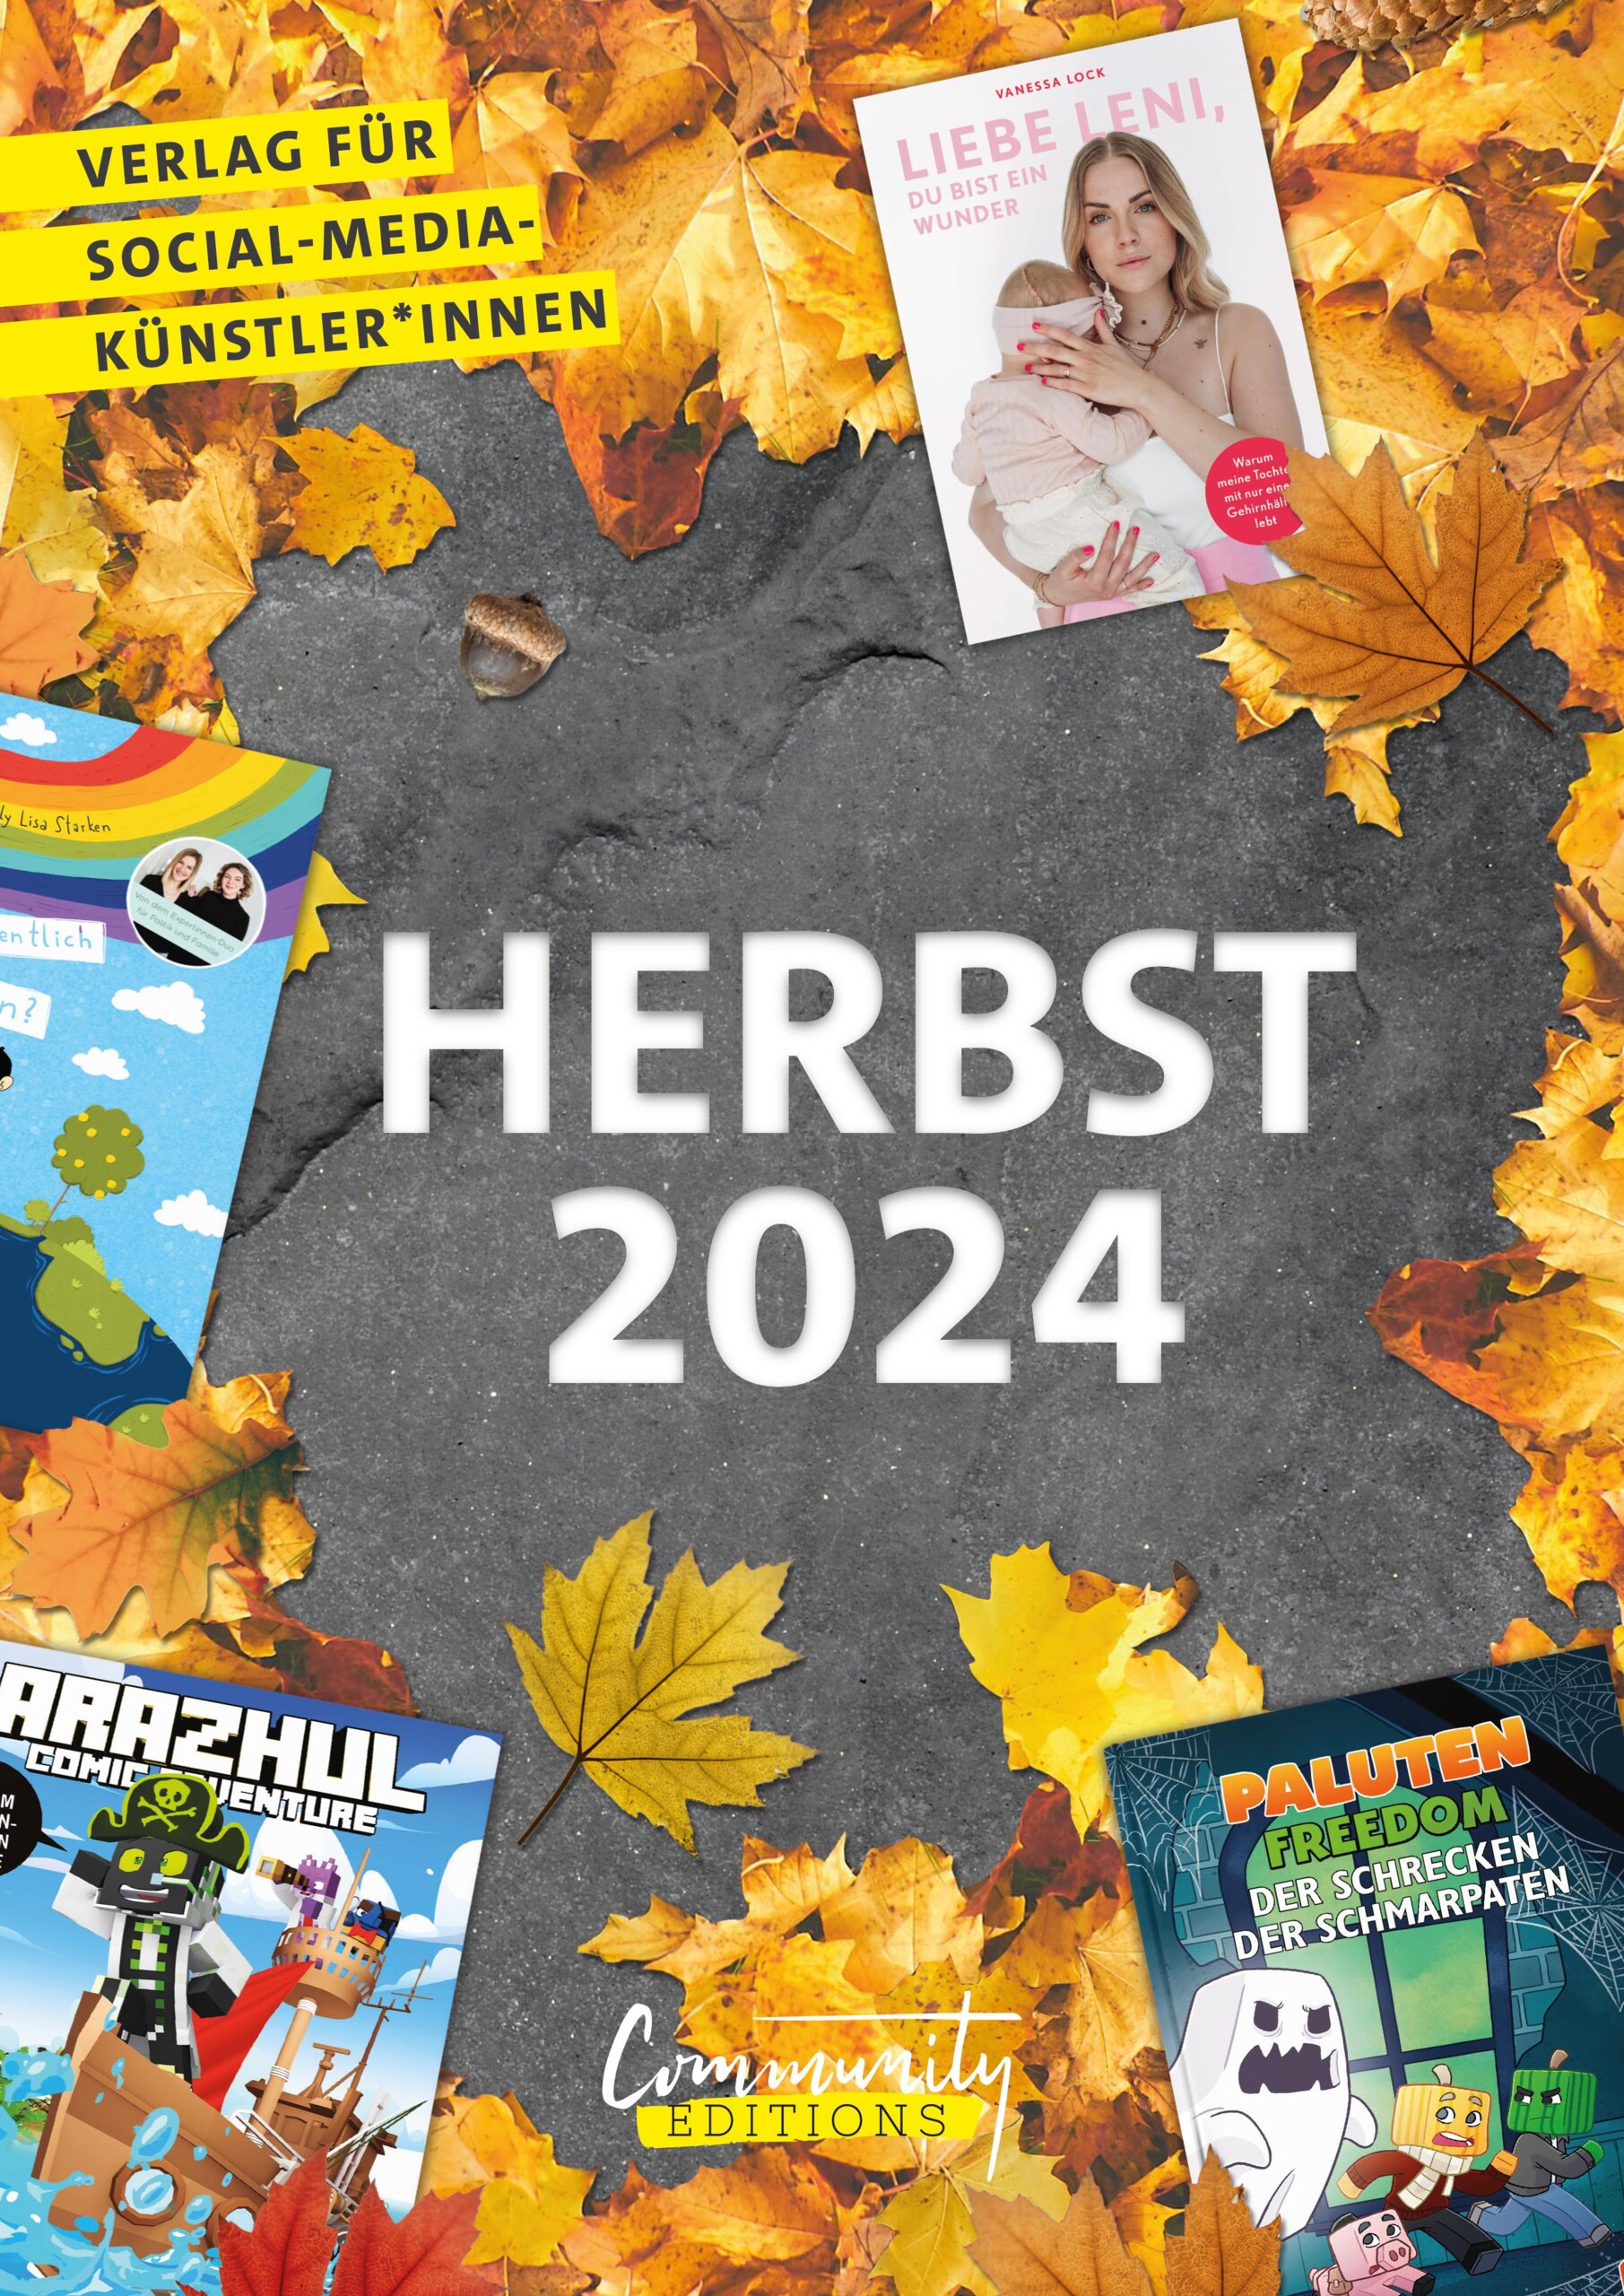 Vorschau Community Editions Herbst 2024